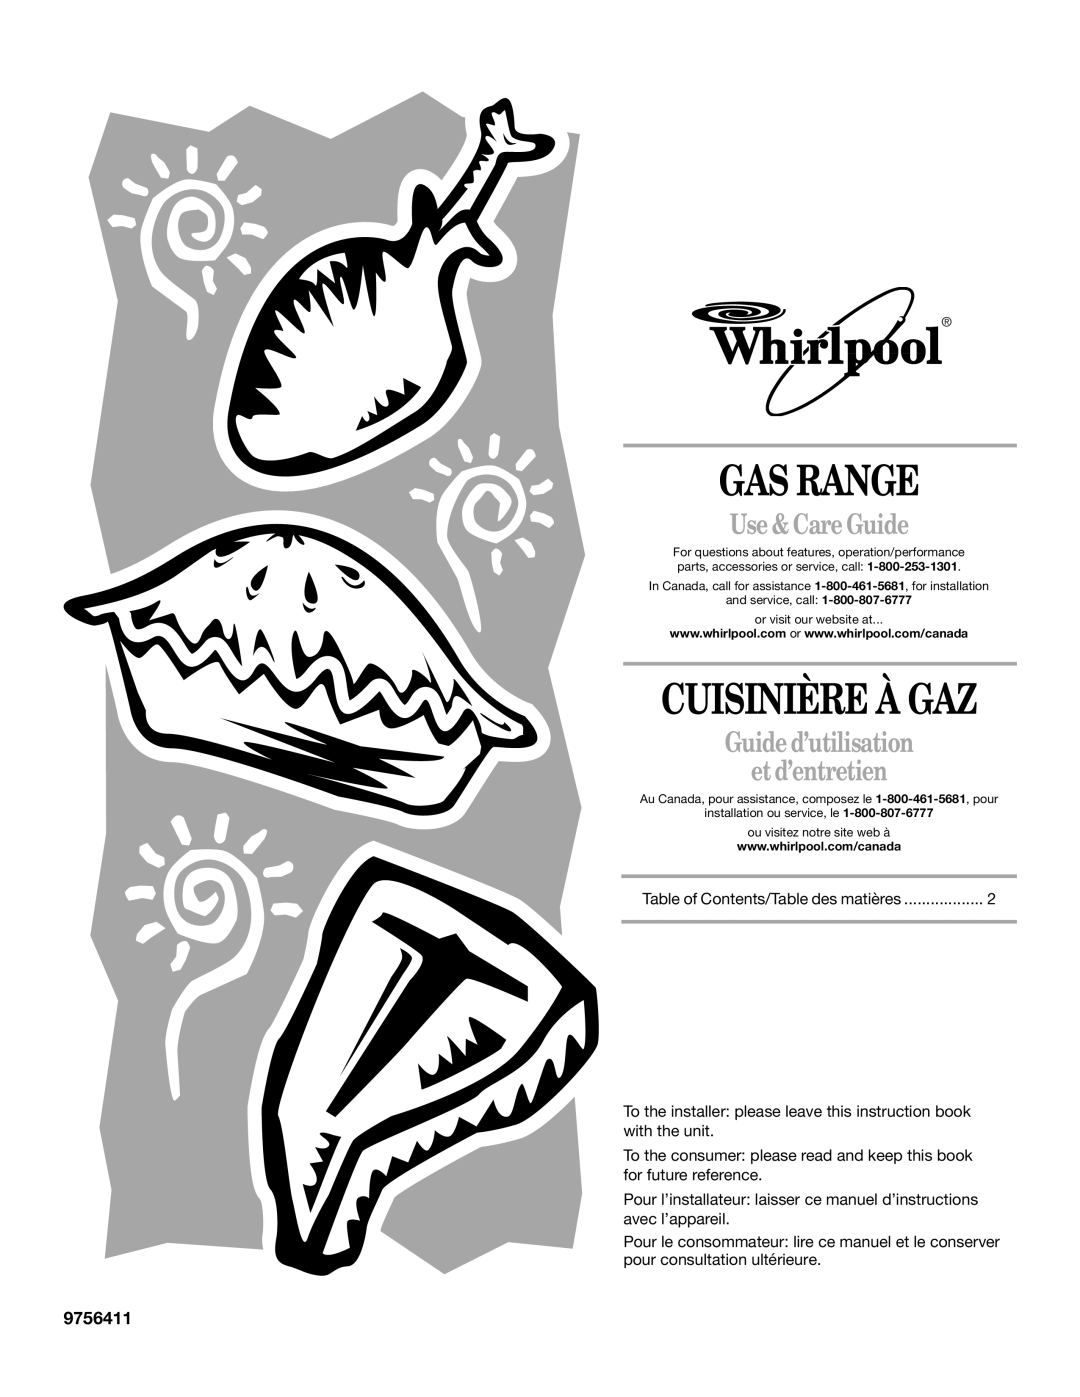 Whirlpool SF378LEPB1 manual Gas Range, Cuisinière À Gaz, Use & Care Guide, Guide d’utilisation et d’entretien, 9756411 